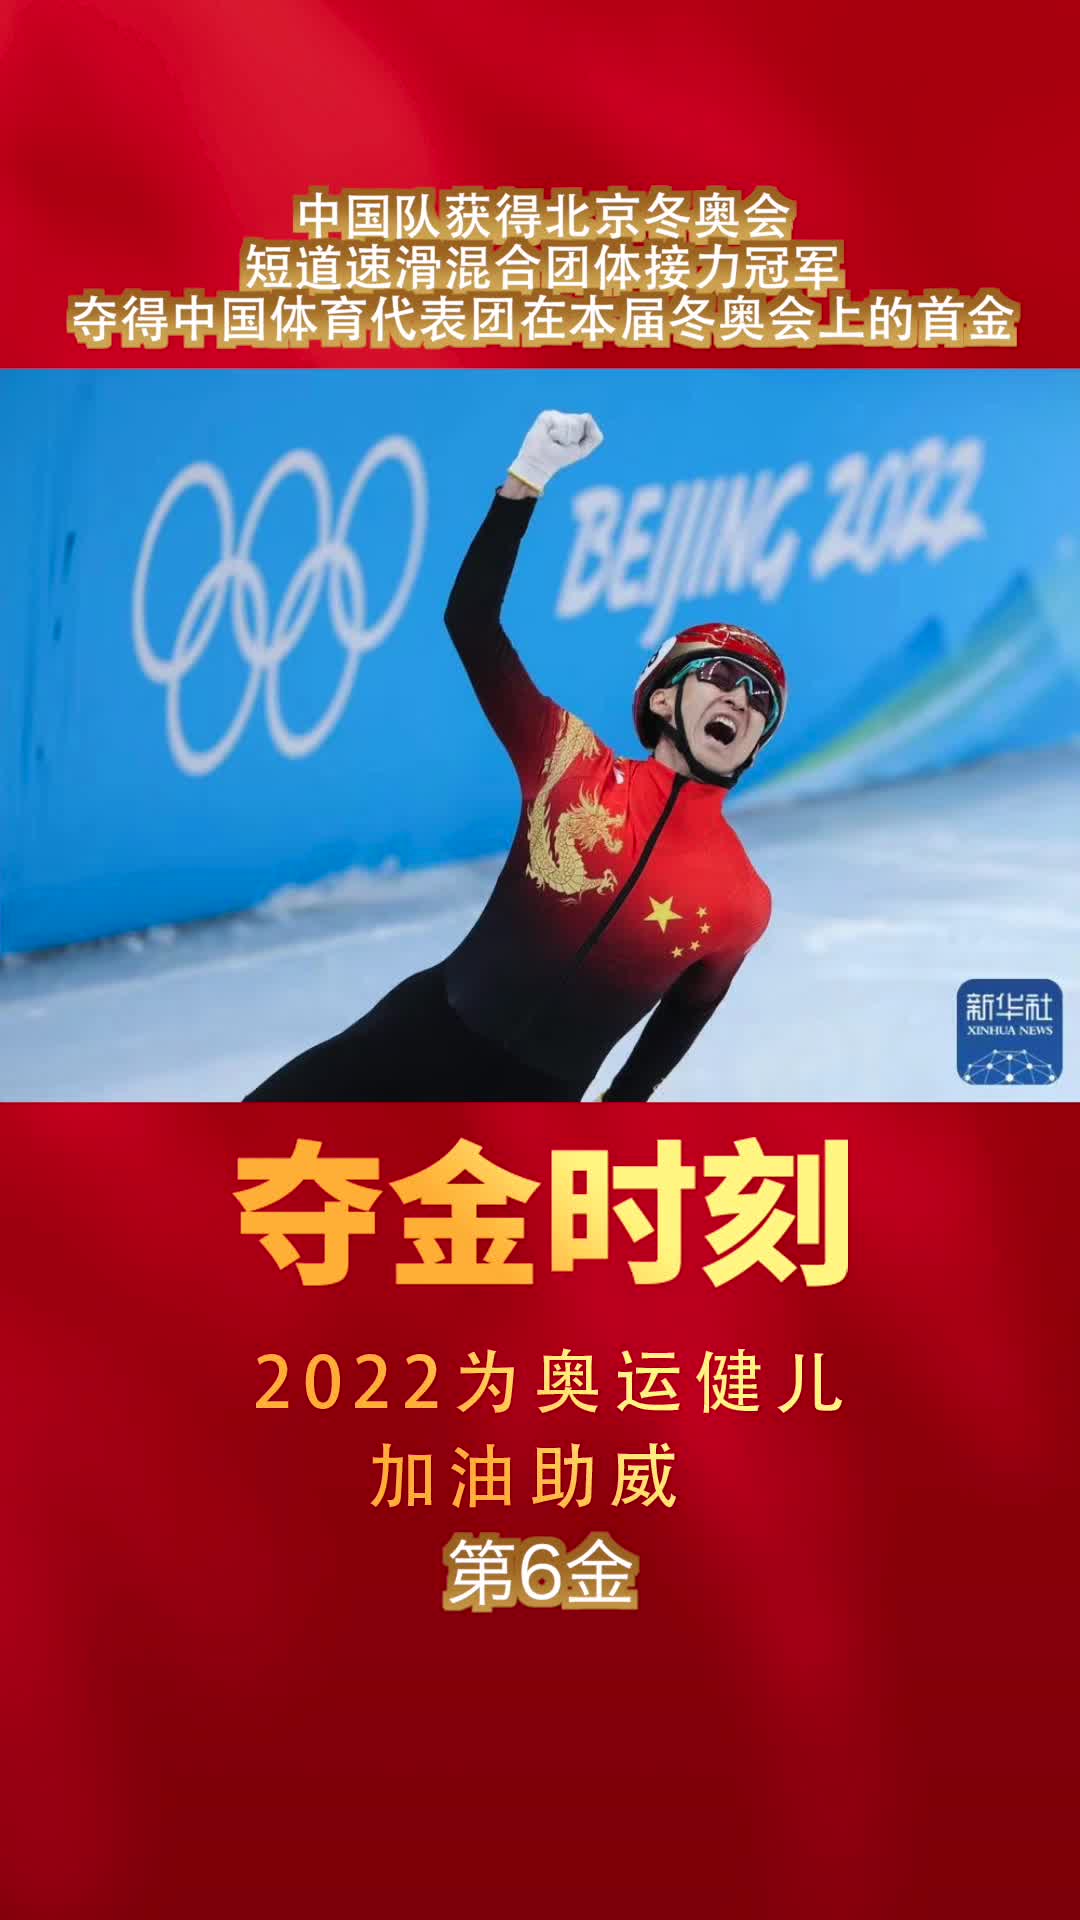 夺得中国体育代表团在本届冬奥会首金